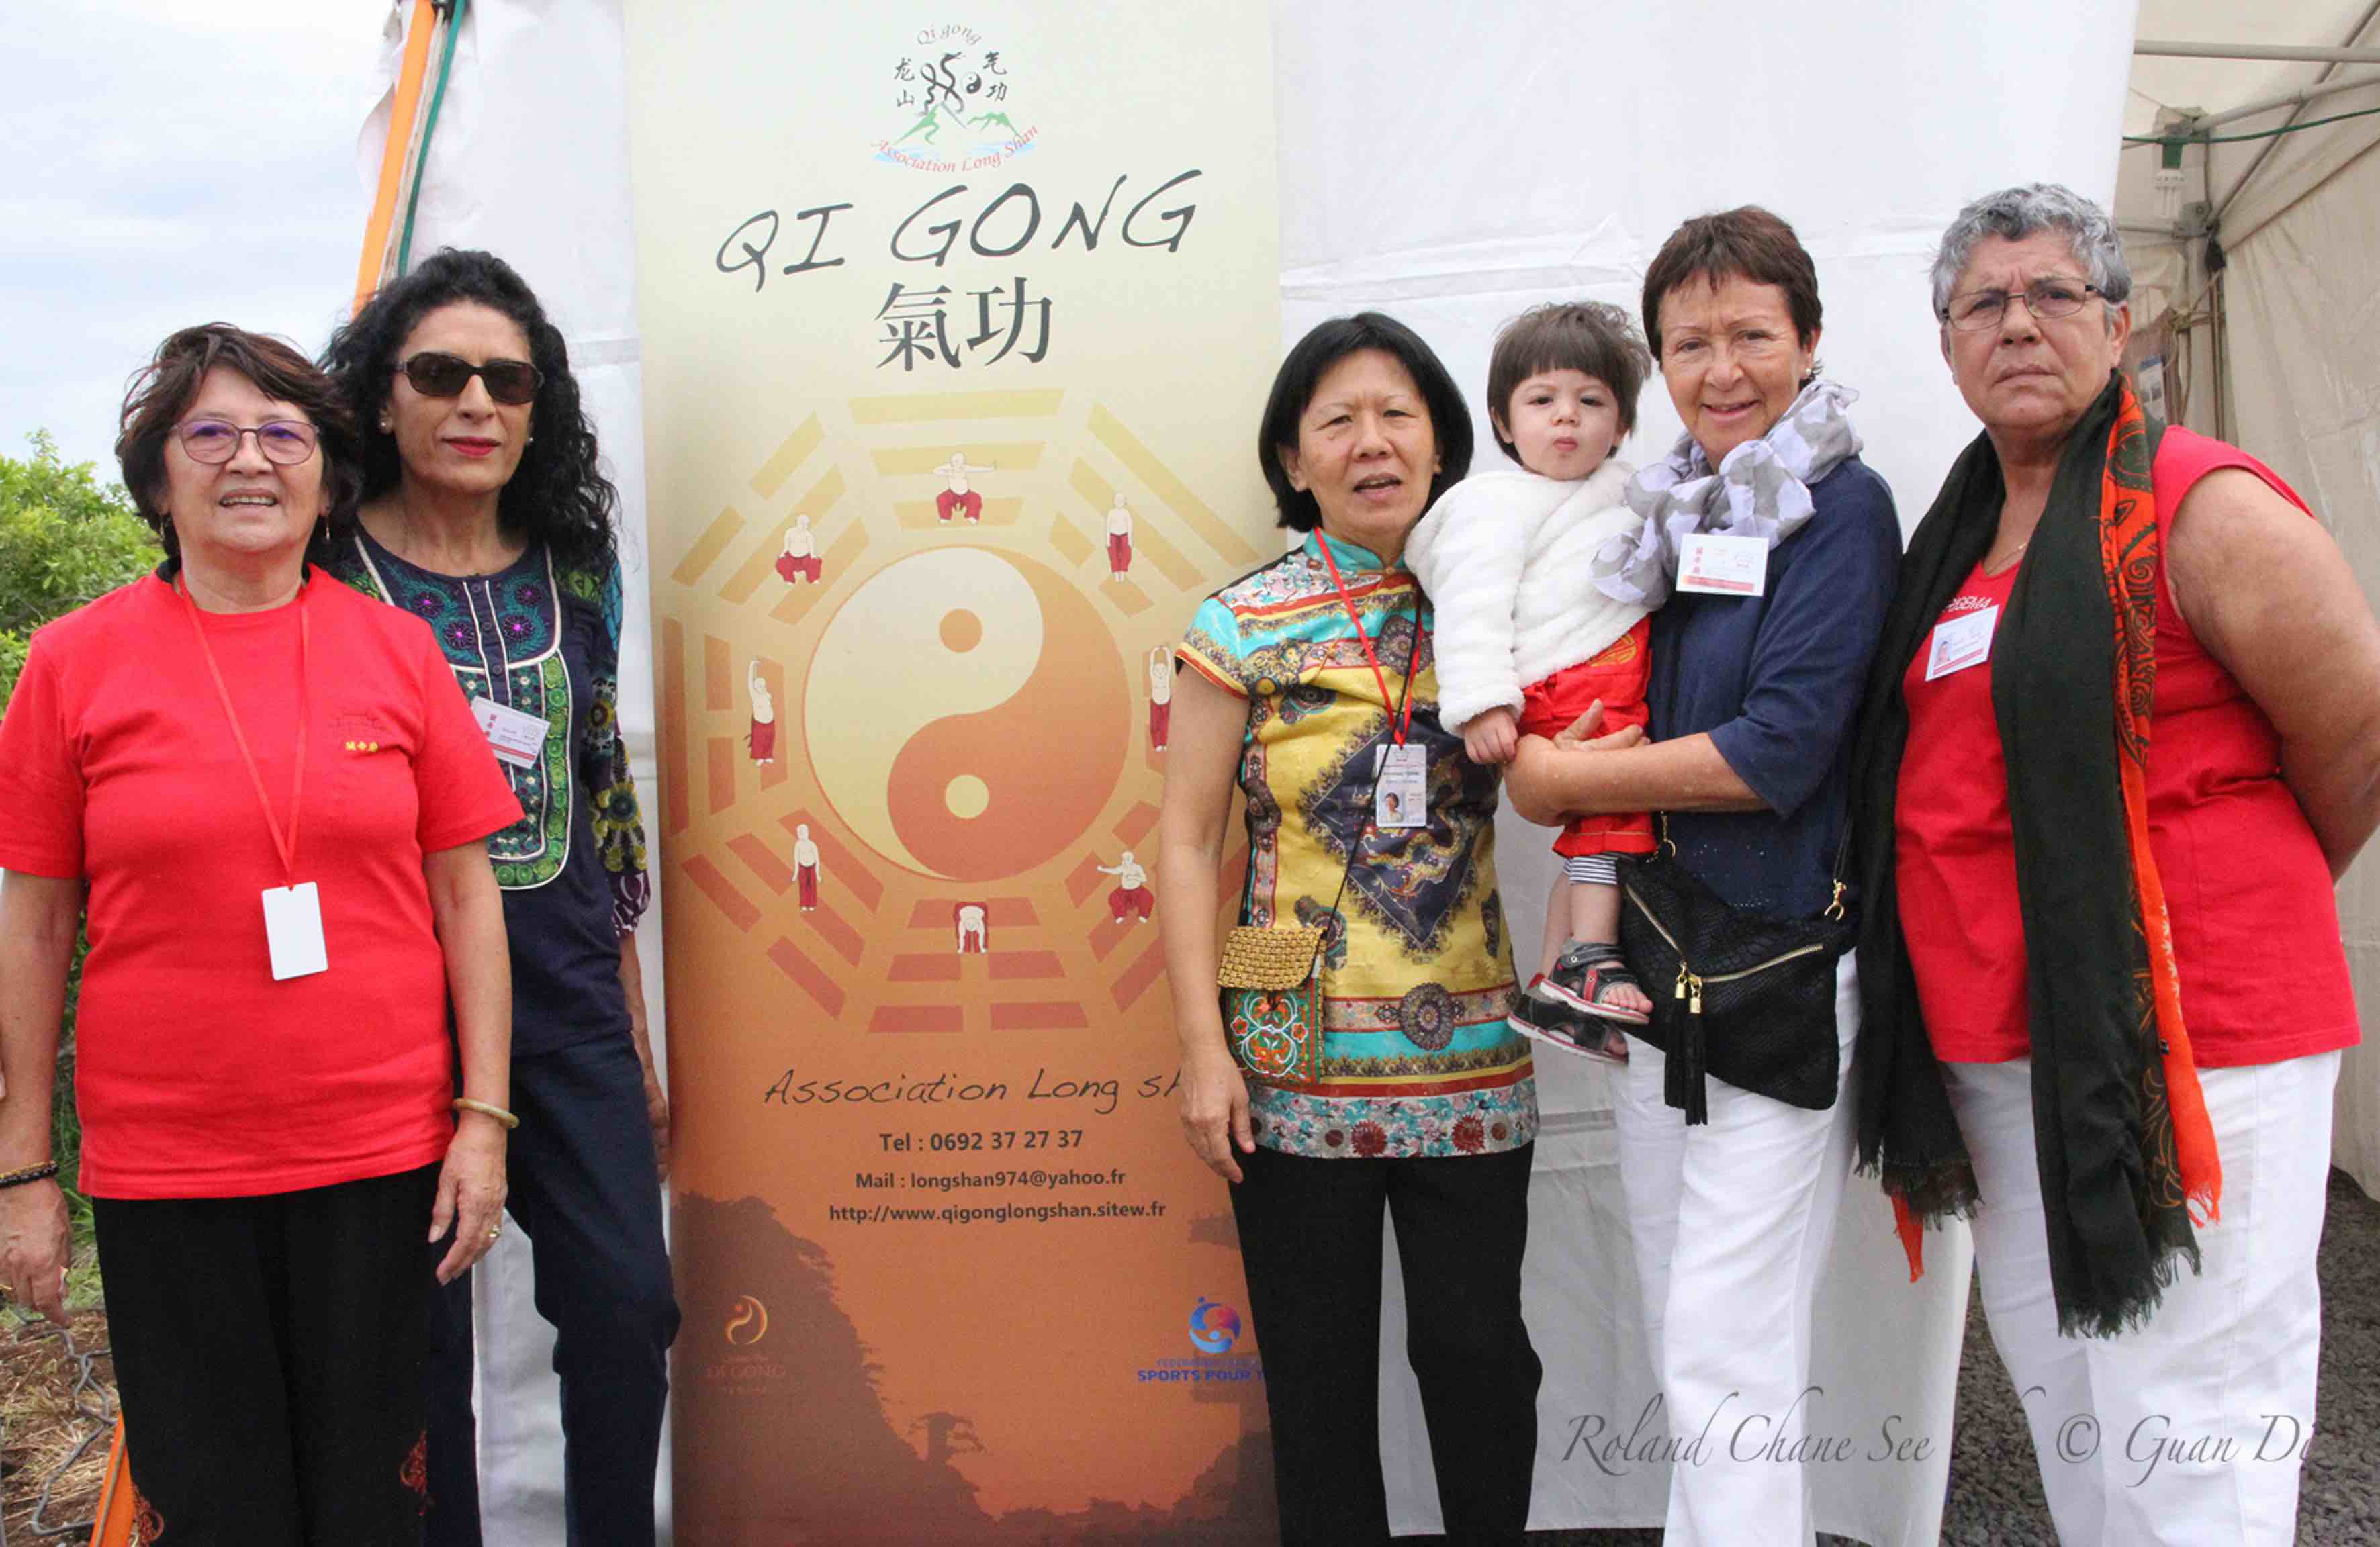 L'association Long Shan a présenté ses activités et effectué des démonstrations de Qi Qong